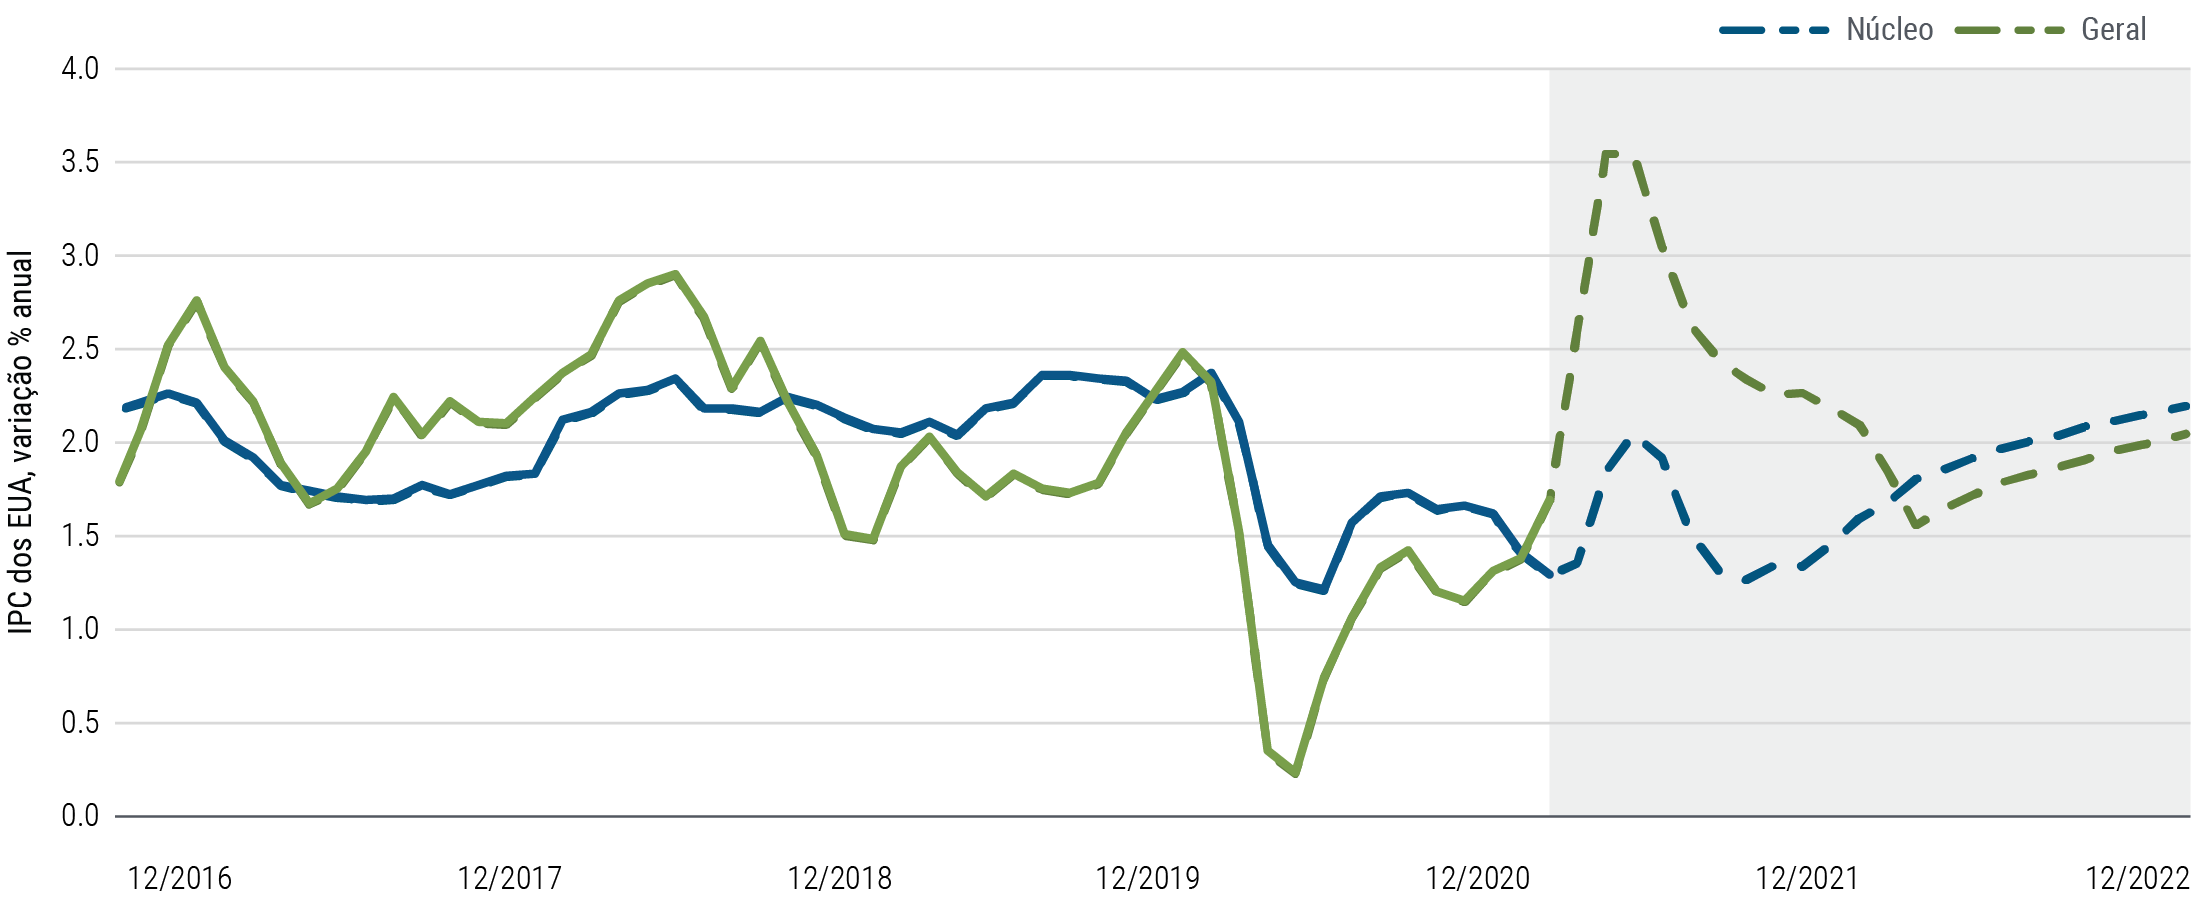 A Figura 1 é um gráfico de linhas que mostra a inflação pelo IPC (índice de preços ao consumidor) dos EUA entre dezembro de 2016 e fevereiro de 2021, bem como as projeções da PIMCO para esse índice até dezembro de 2022. Em 2020, em meio à pandemia, tanto a inflação geral quanto o núcleo de inflação (que não inclui alimentos e energia) aproximaram-se de seus mínimos em vários anos. A PIMCO projeta um salto temporário em ambos os indicadores anuais em meados de 2021, com a inflação geral atingindo 3,5% e o núcleo de inflação chegando a 2,0%, antes de se estabilizarem ao final de 2021 e ao longo de 2022.